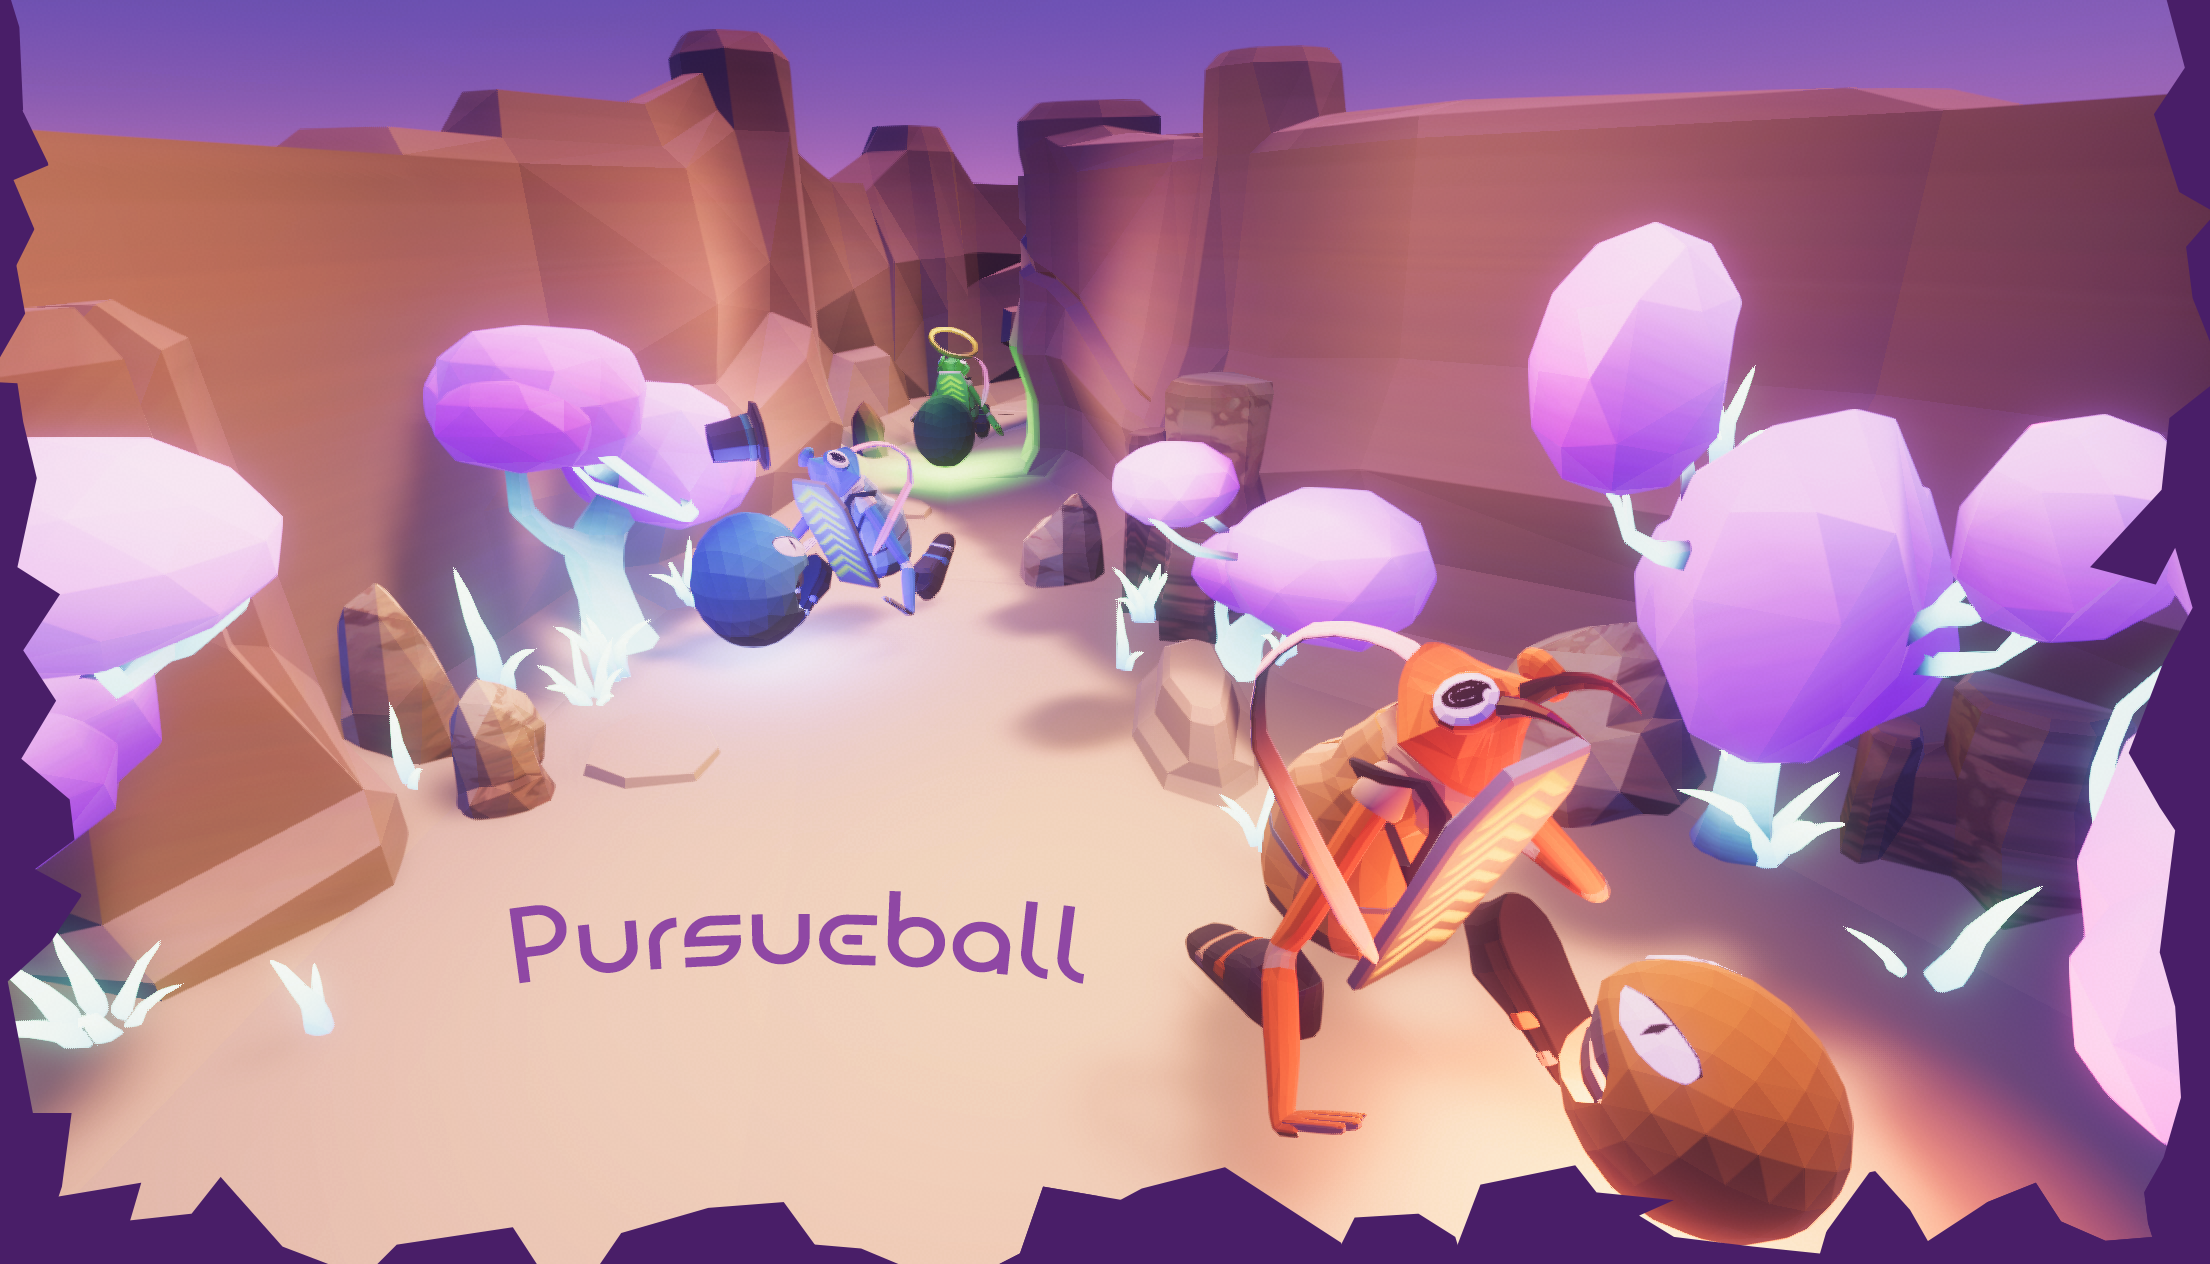 Pursueball